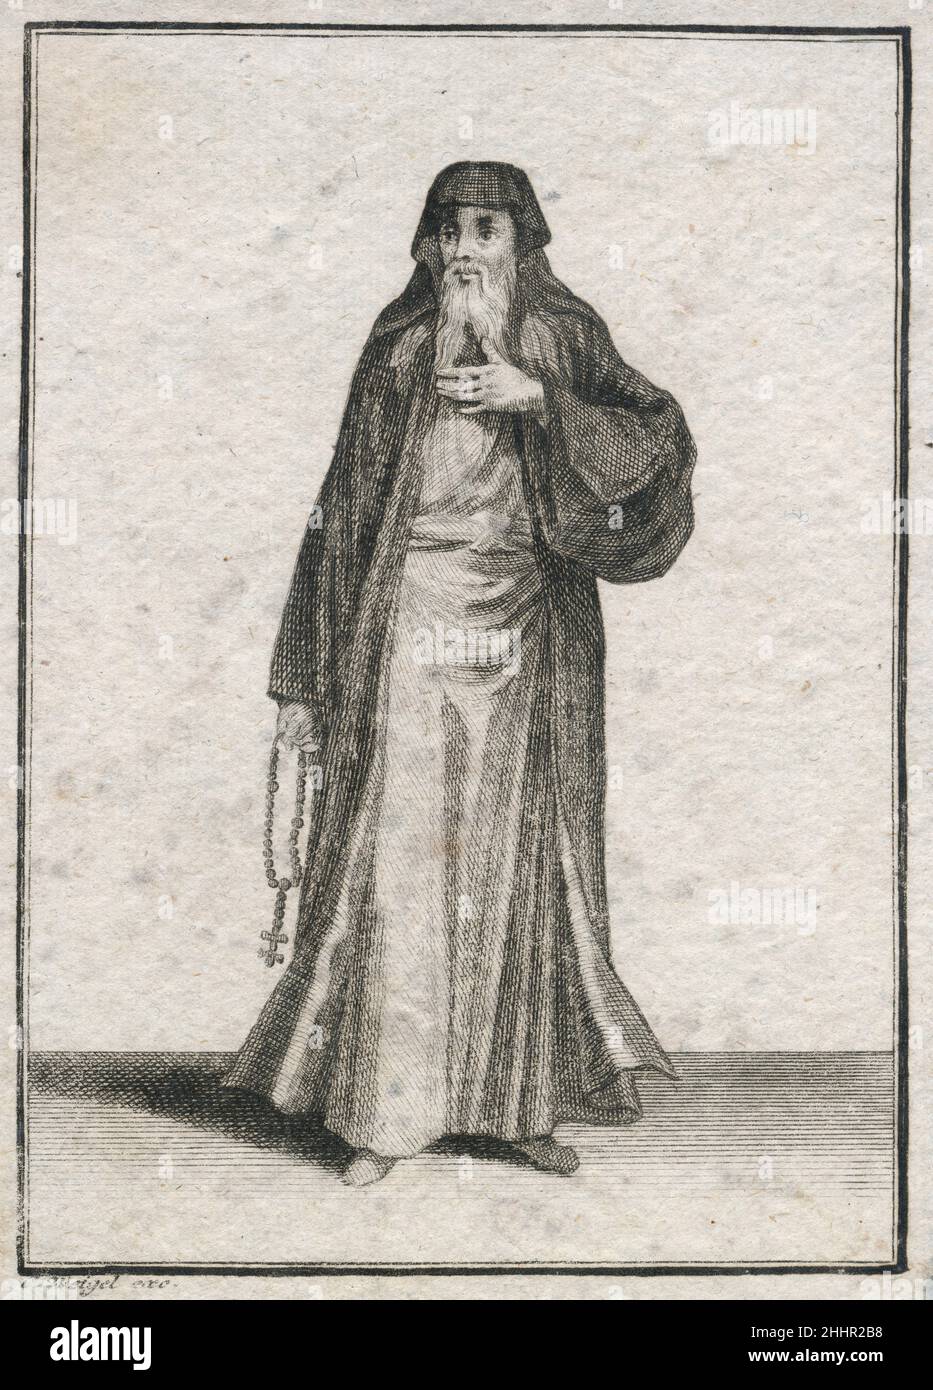 Incisione antica del 17th secolo, 'un prete greco' (Ein Griechischer Priester) di Johann Christoph Weigel, noto come Christoph Weigel il Vecchio (1654-1725). FONTE: INCISIONE ORIGINALE Foto Stock